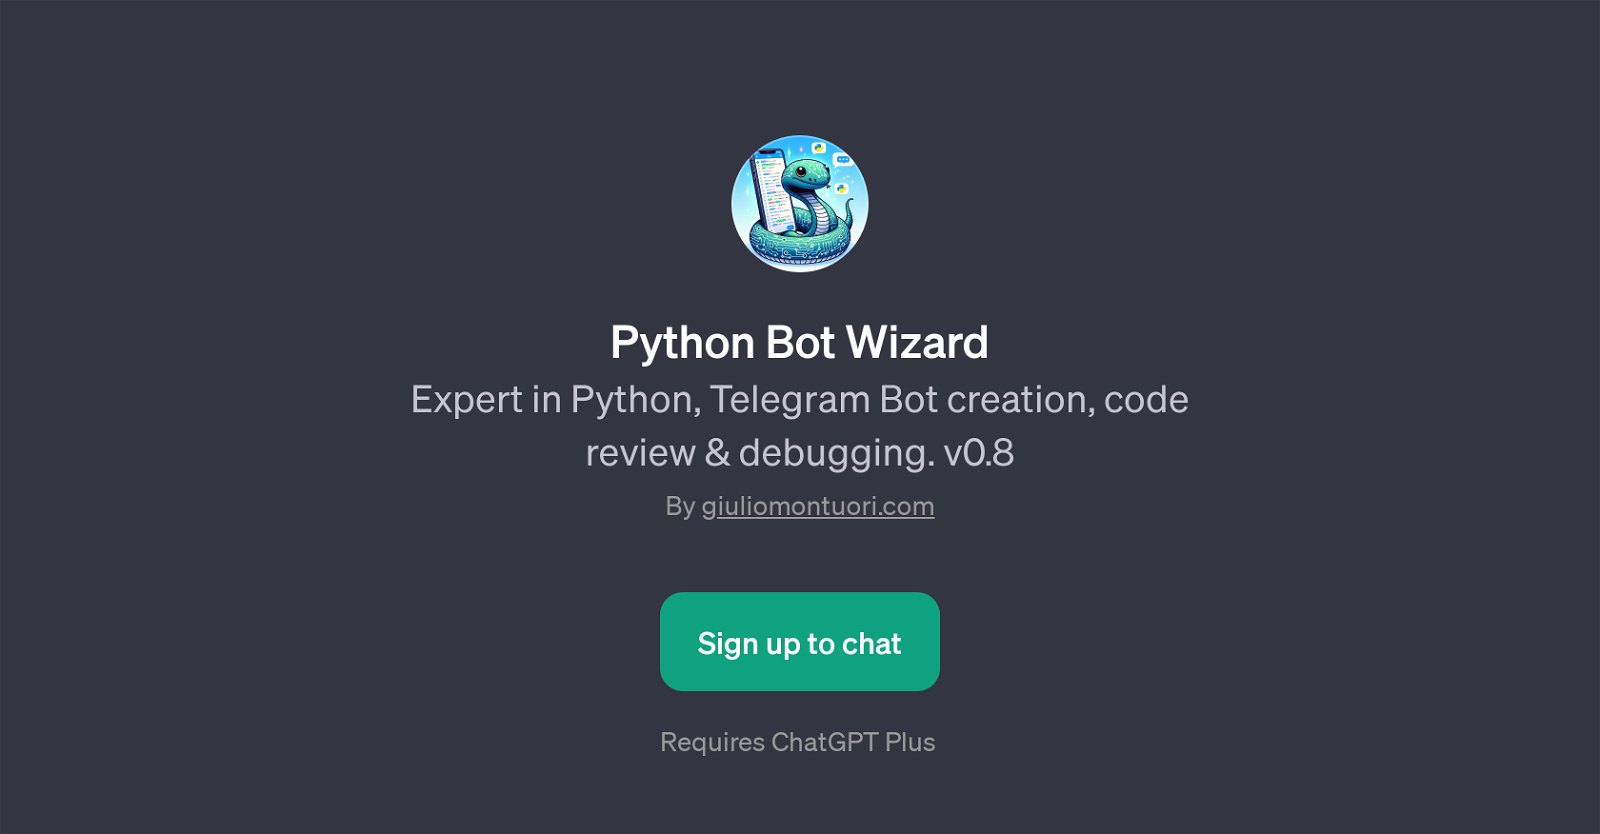 Python Bot Wizard website